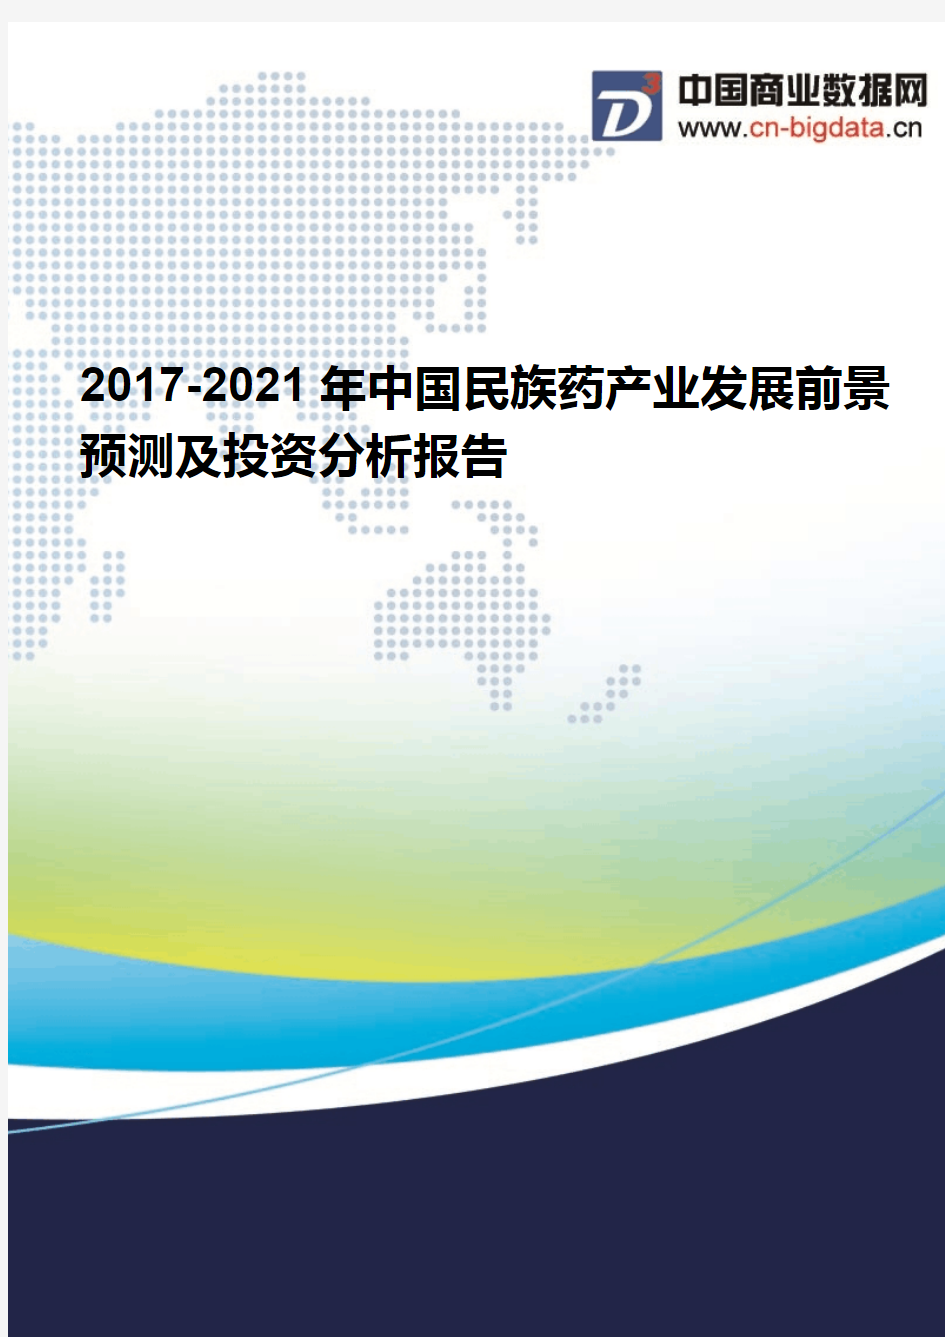 (2017版目录)2017-2021年中国民族药产业发展前景预测及投资分析报告